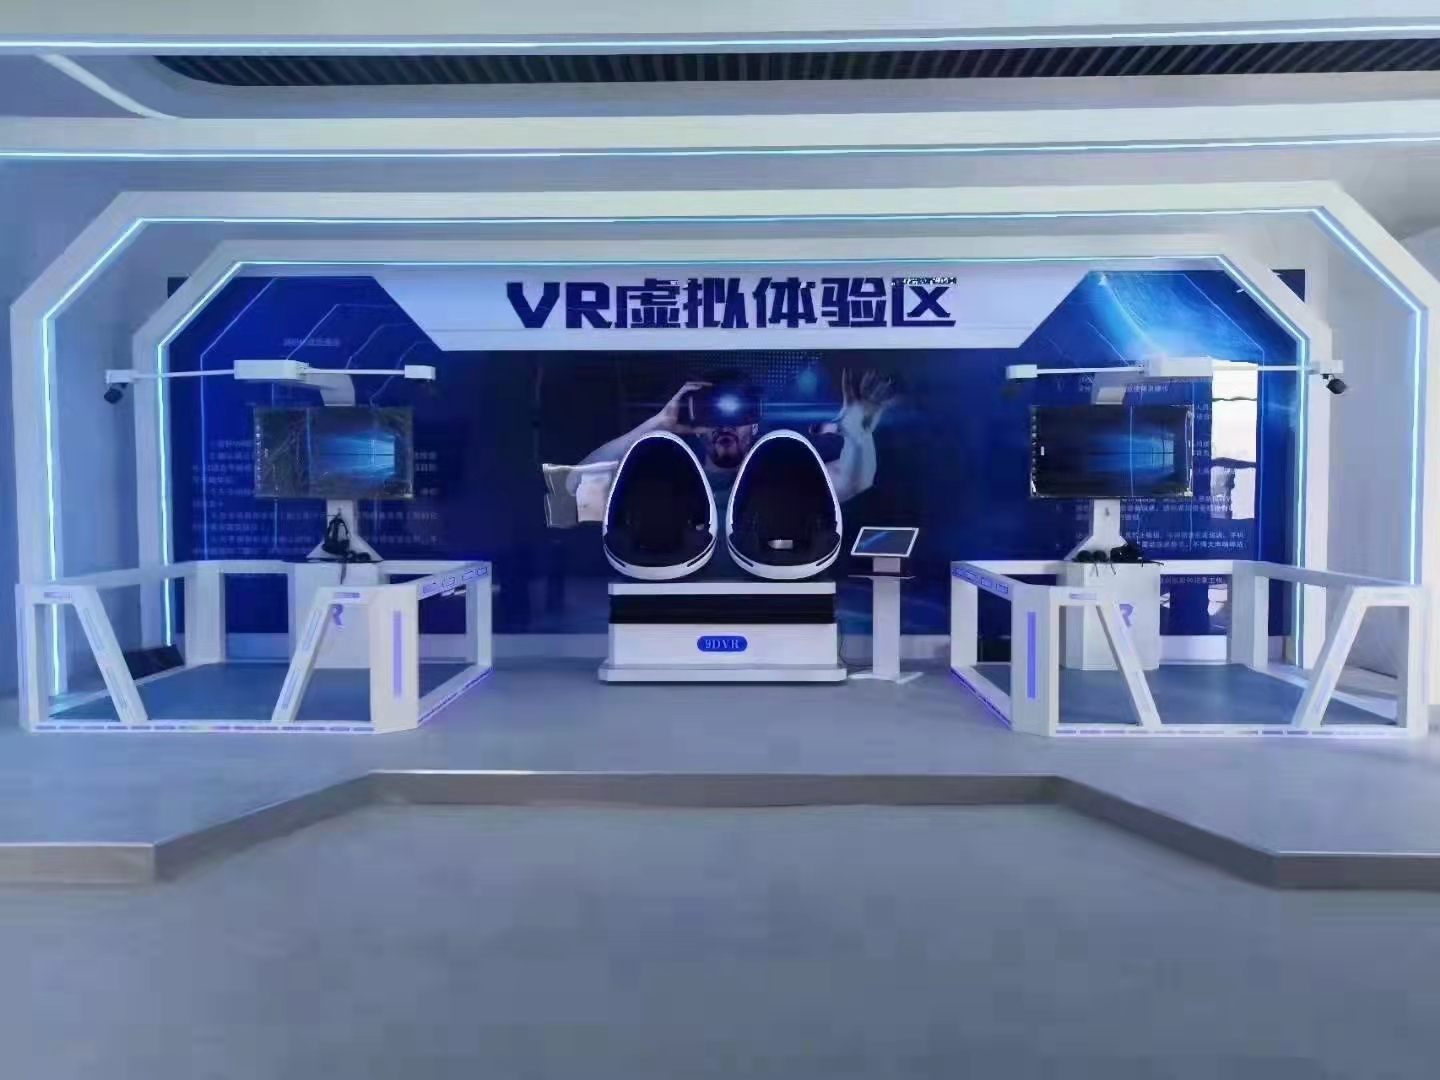 VR虚拟现实体验馆.jpg